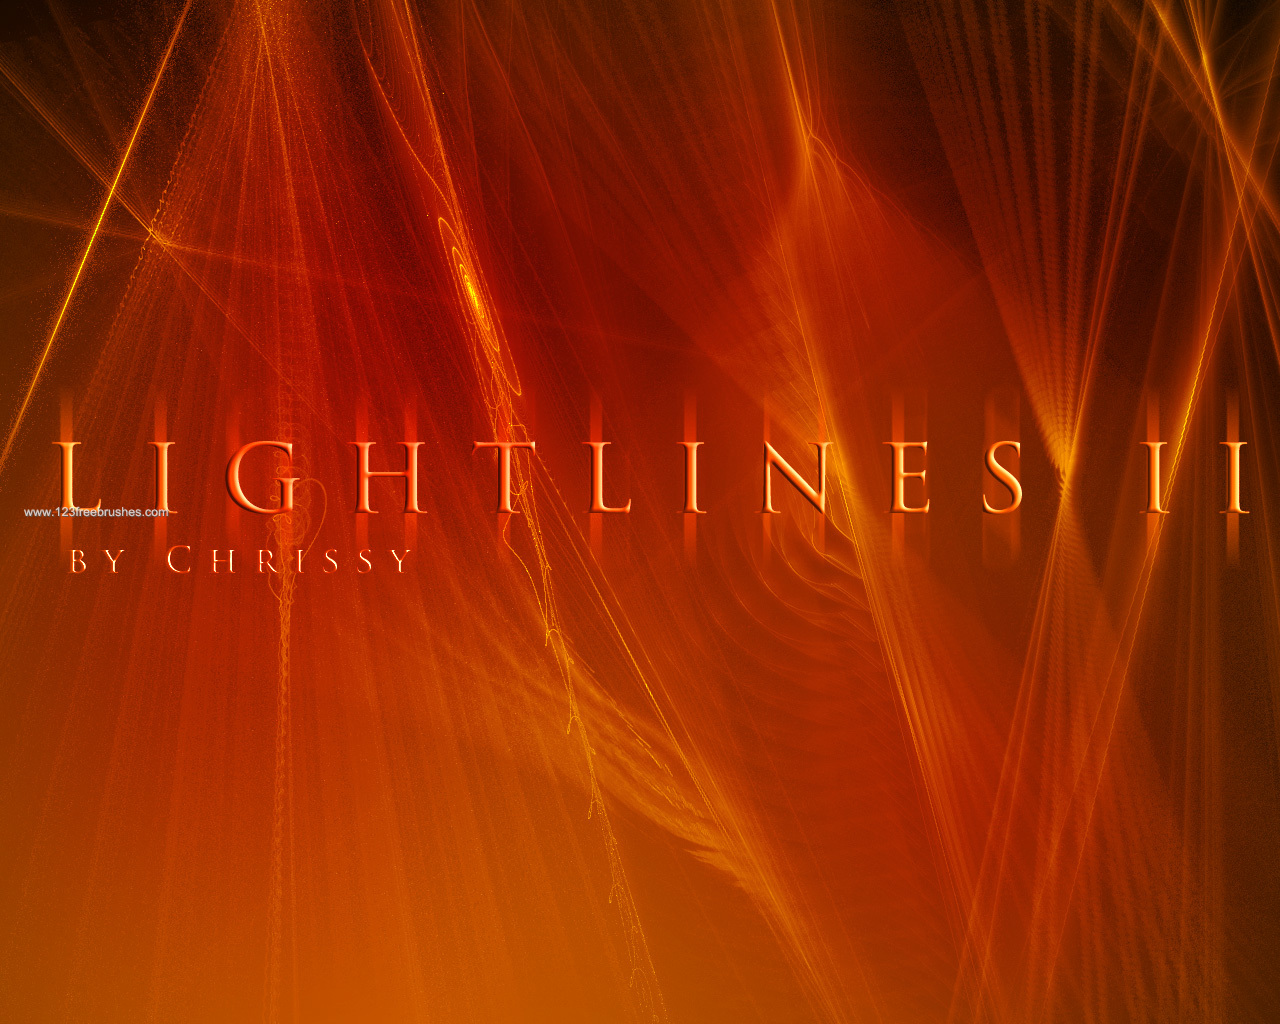 Light Lines